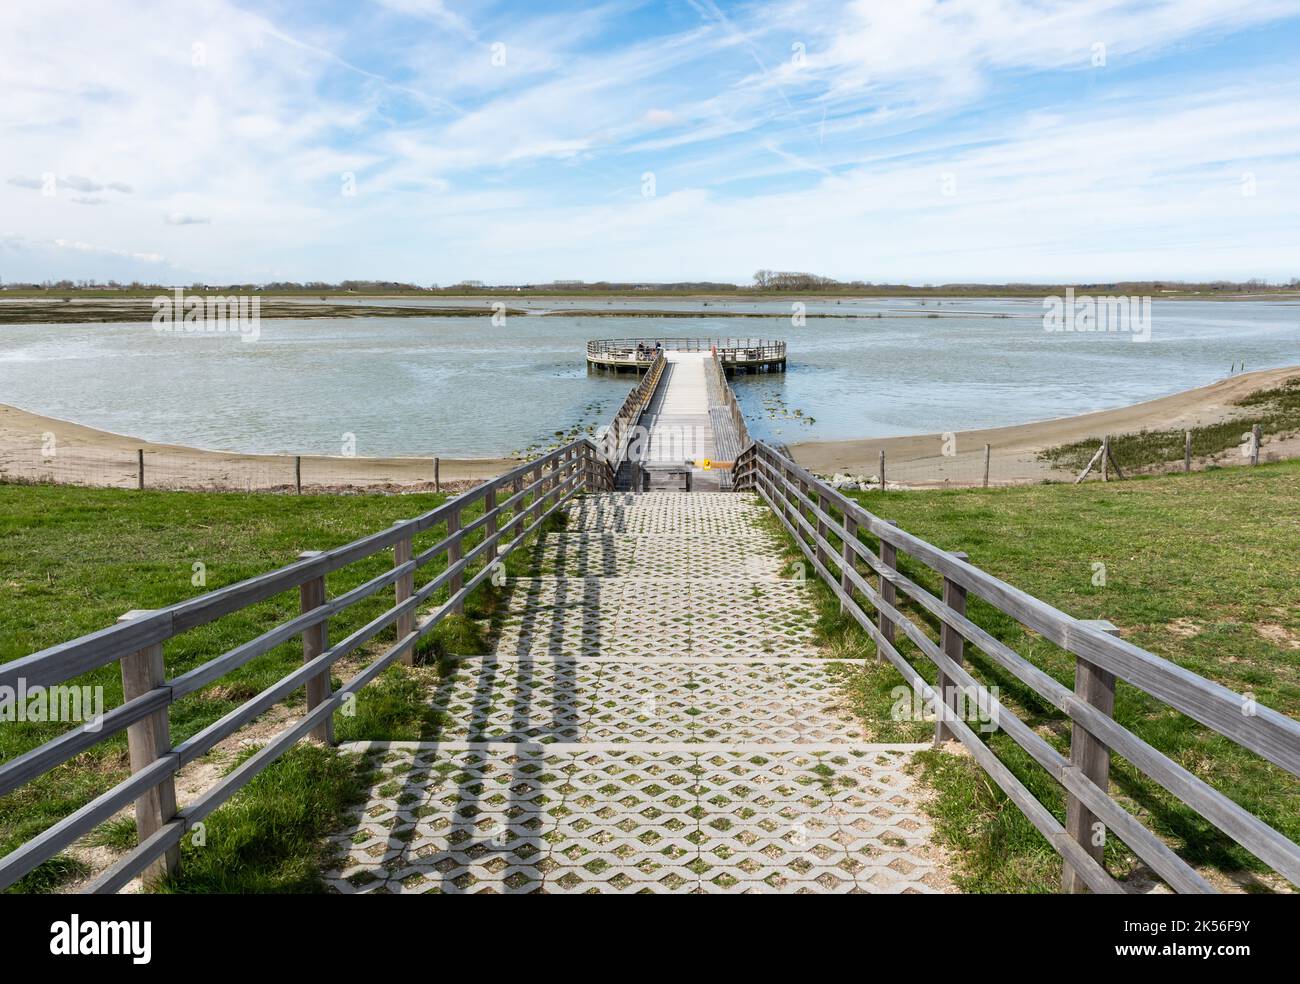 Knokke Heist, Flämische Region - Belgien - 04 03 2021 Aktive Frau, die einen hölzernen Pier in einem Naturschutzgebiet am Meer entlang läuft Stockfoto